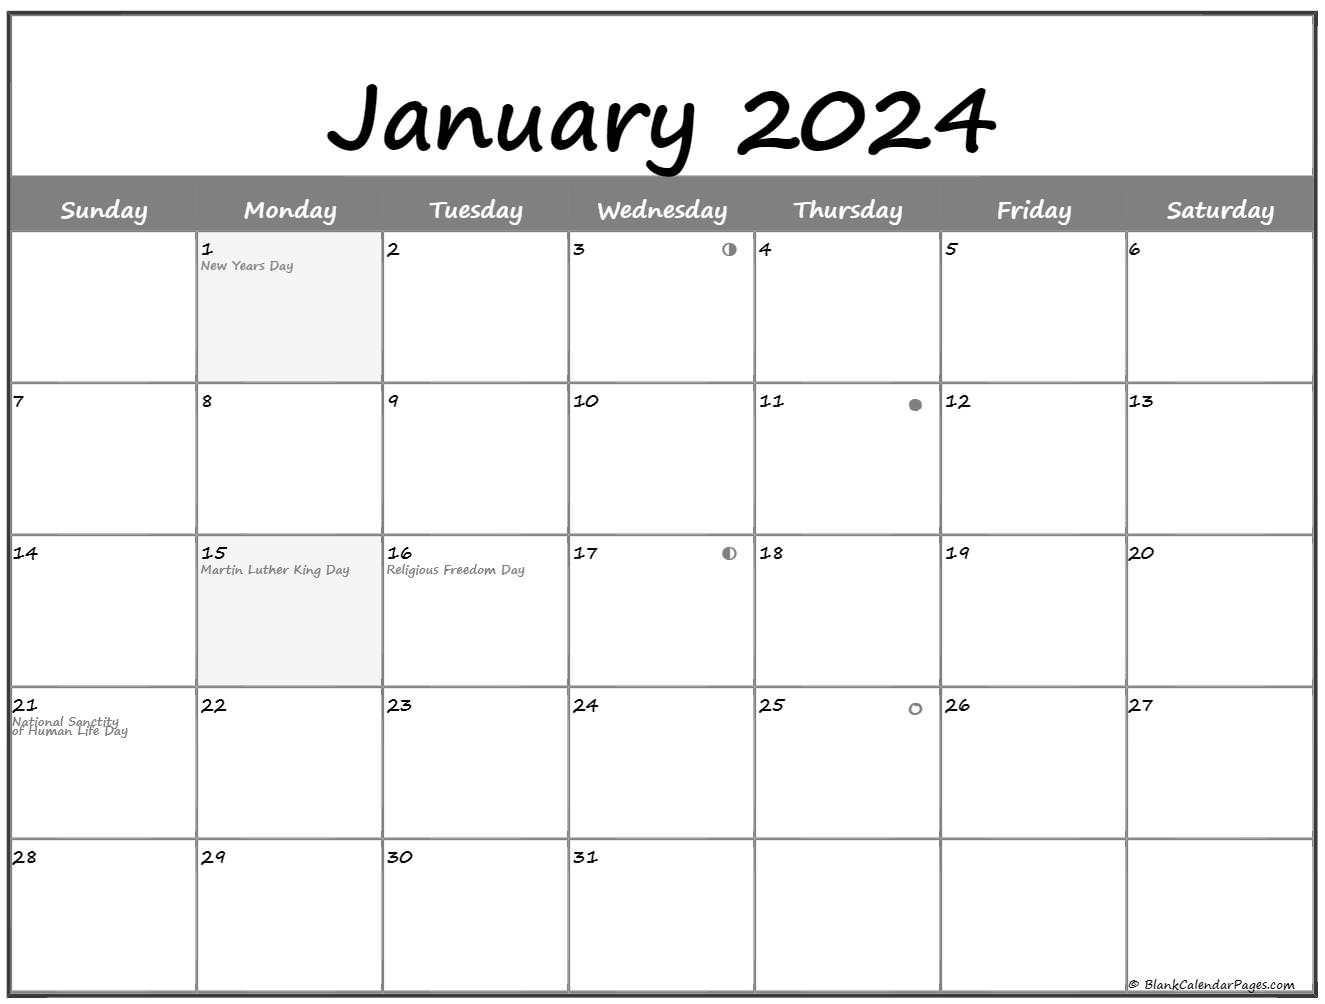 January 2024 Lunar Calendar | Moon Phase Calendar